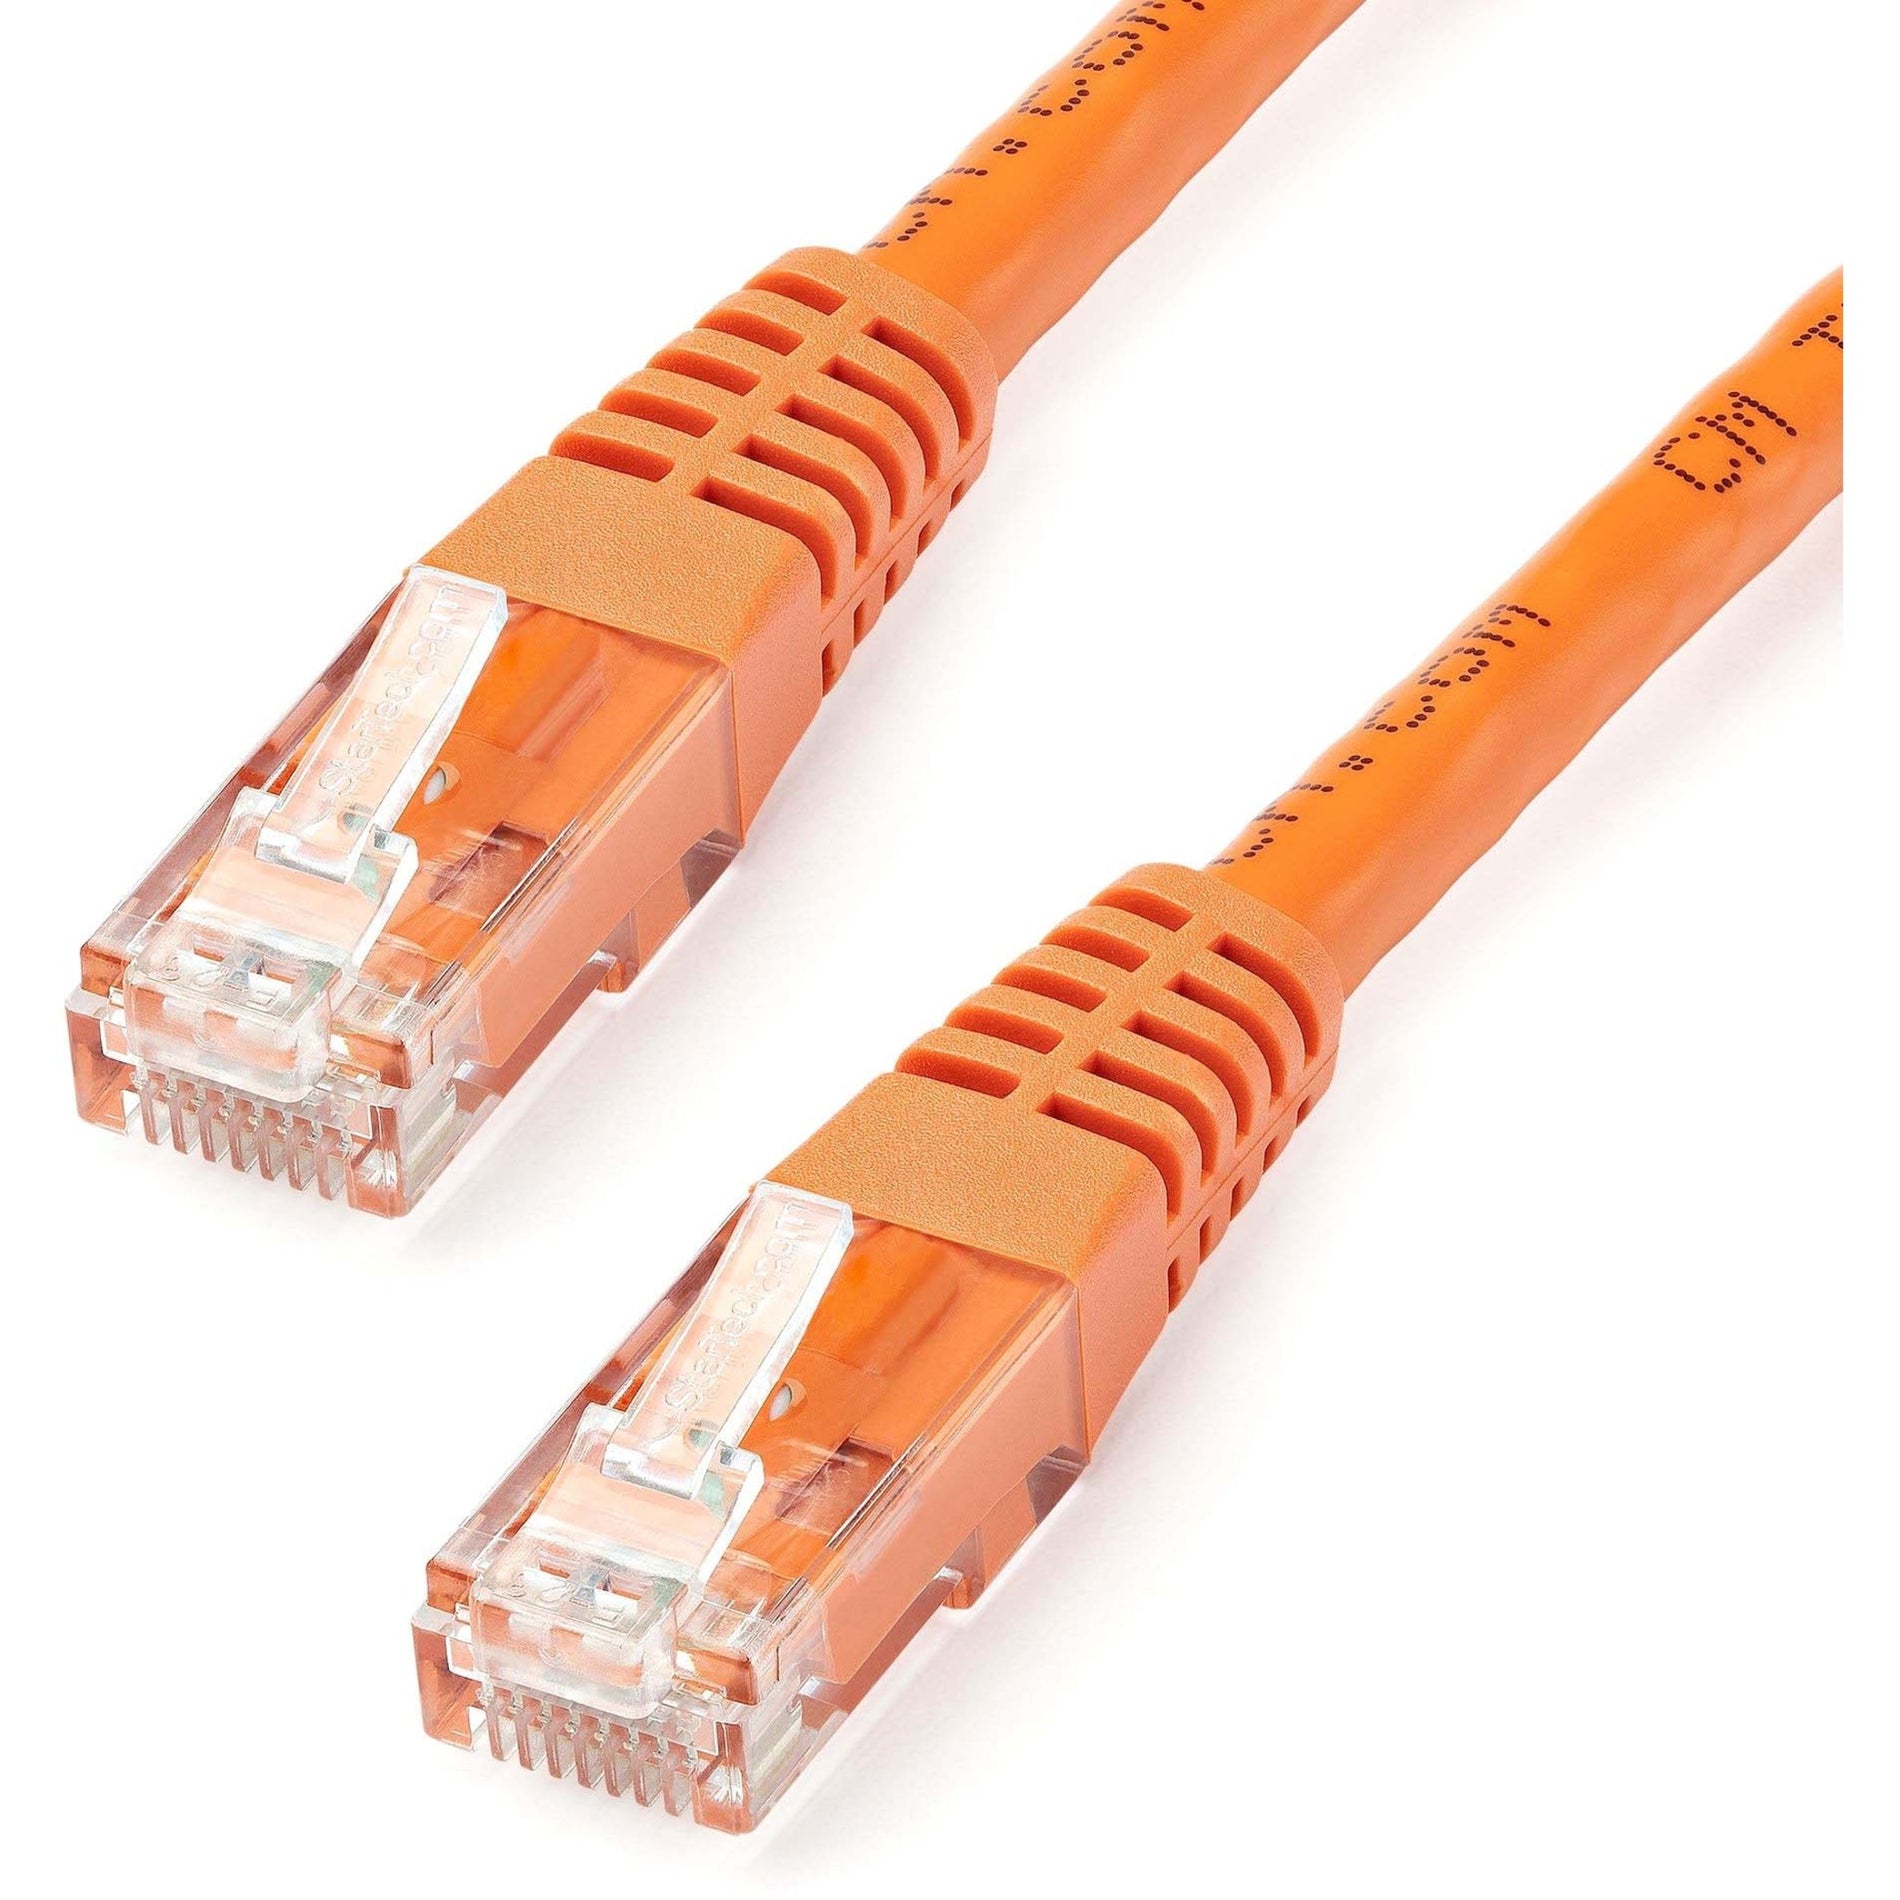 StarTech.com C6PATCH25OR 25ft Orange Cat6 UTP Patch Cable ETL Verified, Gigabit Ethernet Network Cord